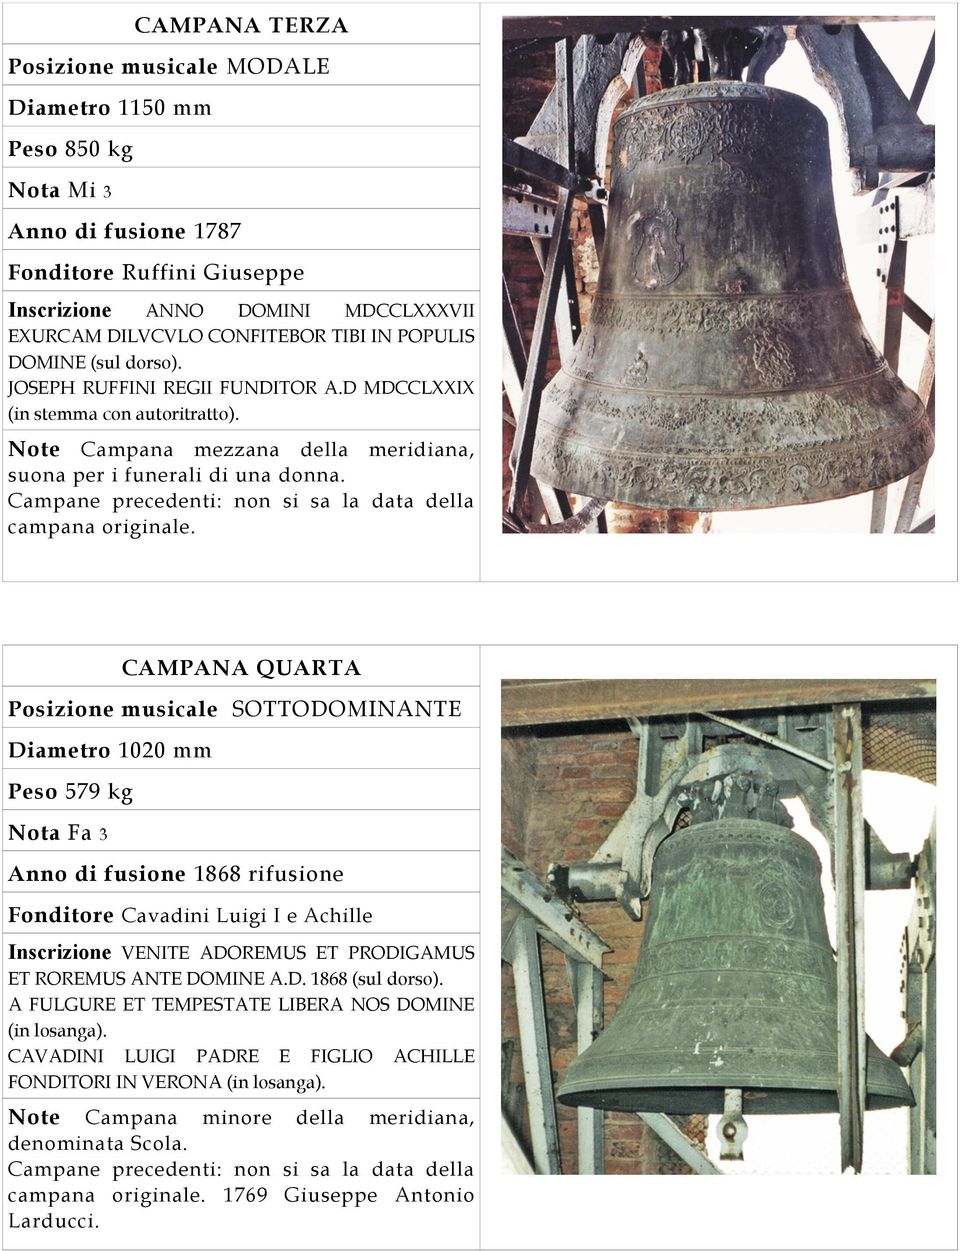 Campane precedenti: non si sa la data della campana originale.